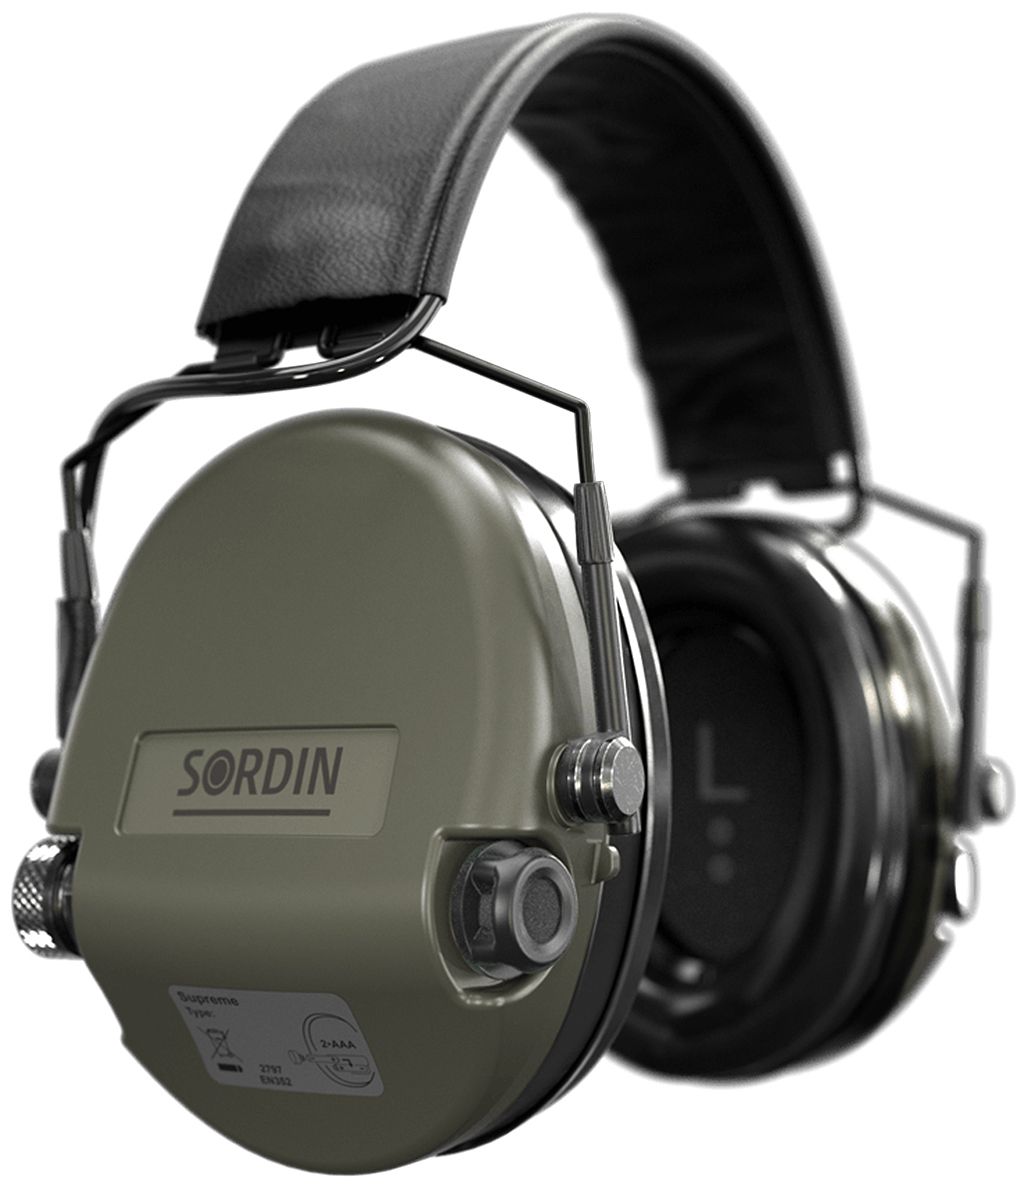 Sordin Supreme MIL SFA Gehörschutz - aktiver Militär-Gehörschützer - 26-32 dB SNR dank Dämmungs-Ring - grüne Kapseln